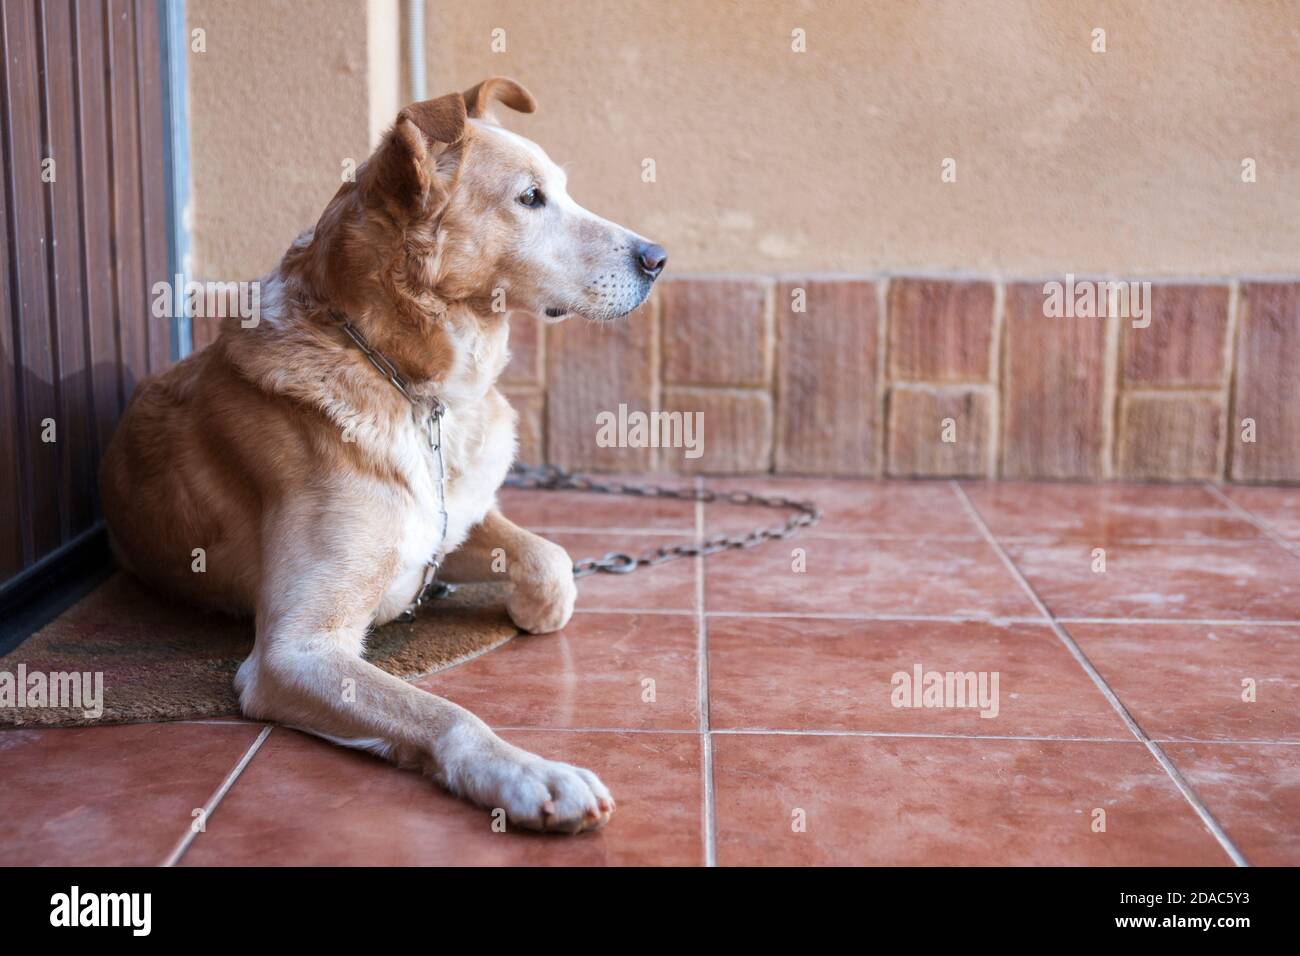 Wachhund an eine Kette gebunden, die den Eingang eines Hauses bewacht. Spanien Stockfoto